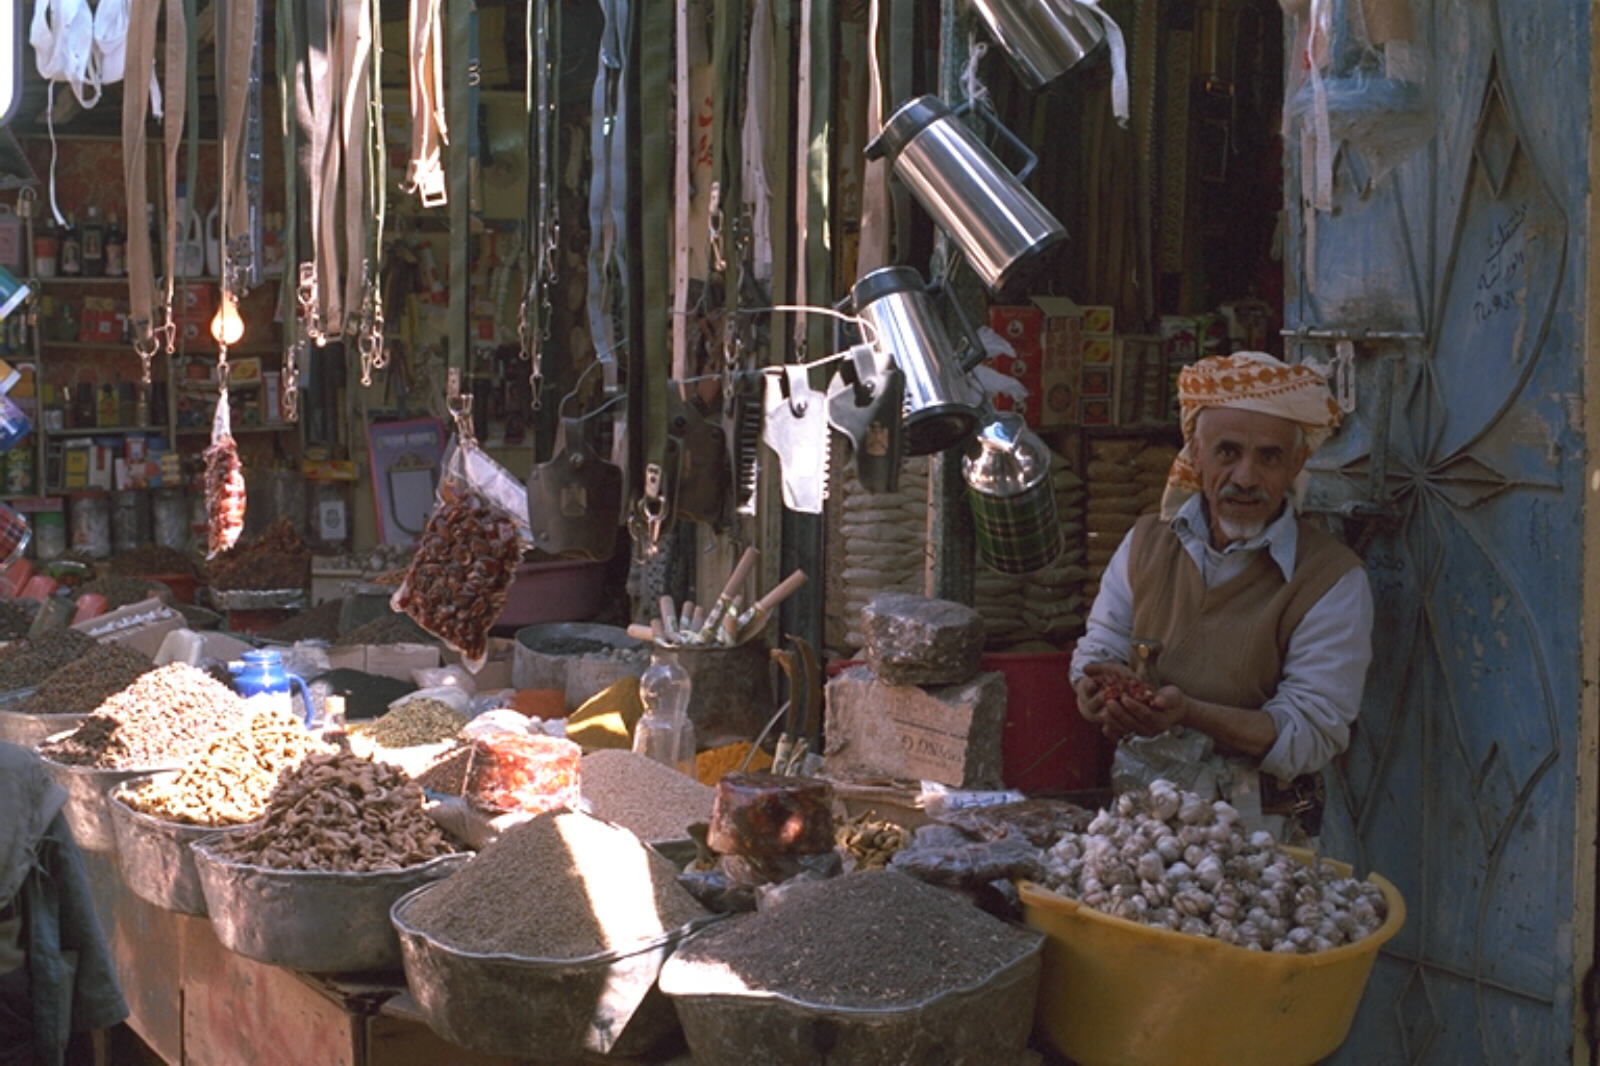 The souk (market) in Rada, Yemen